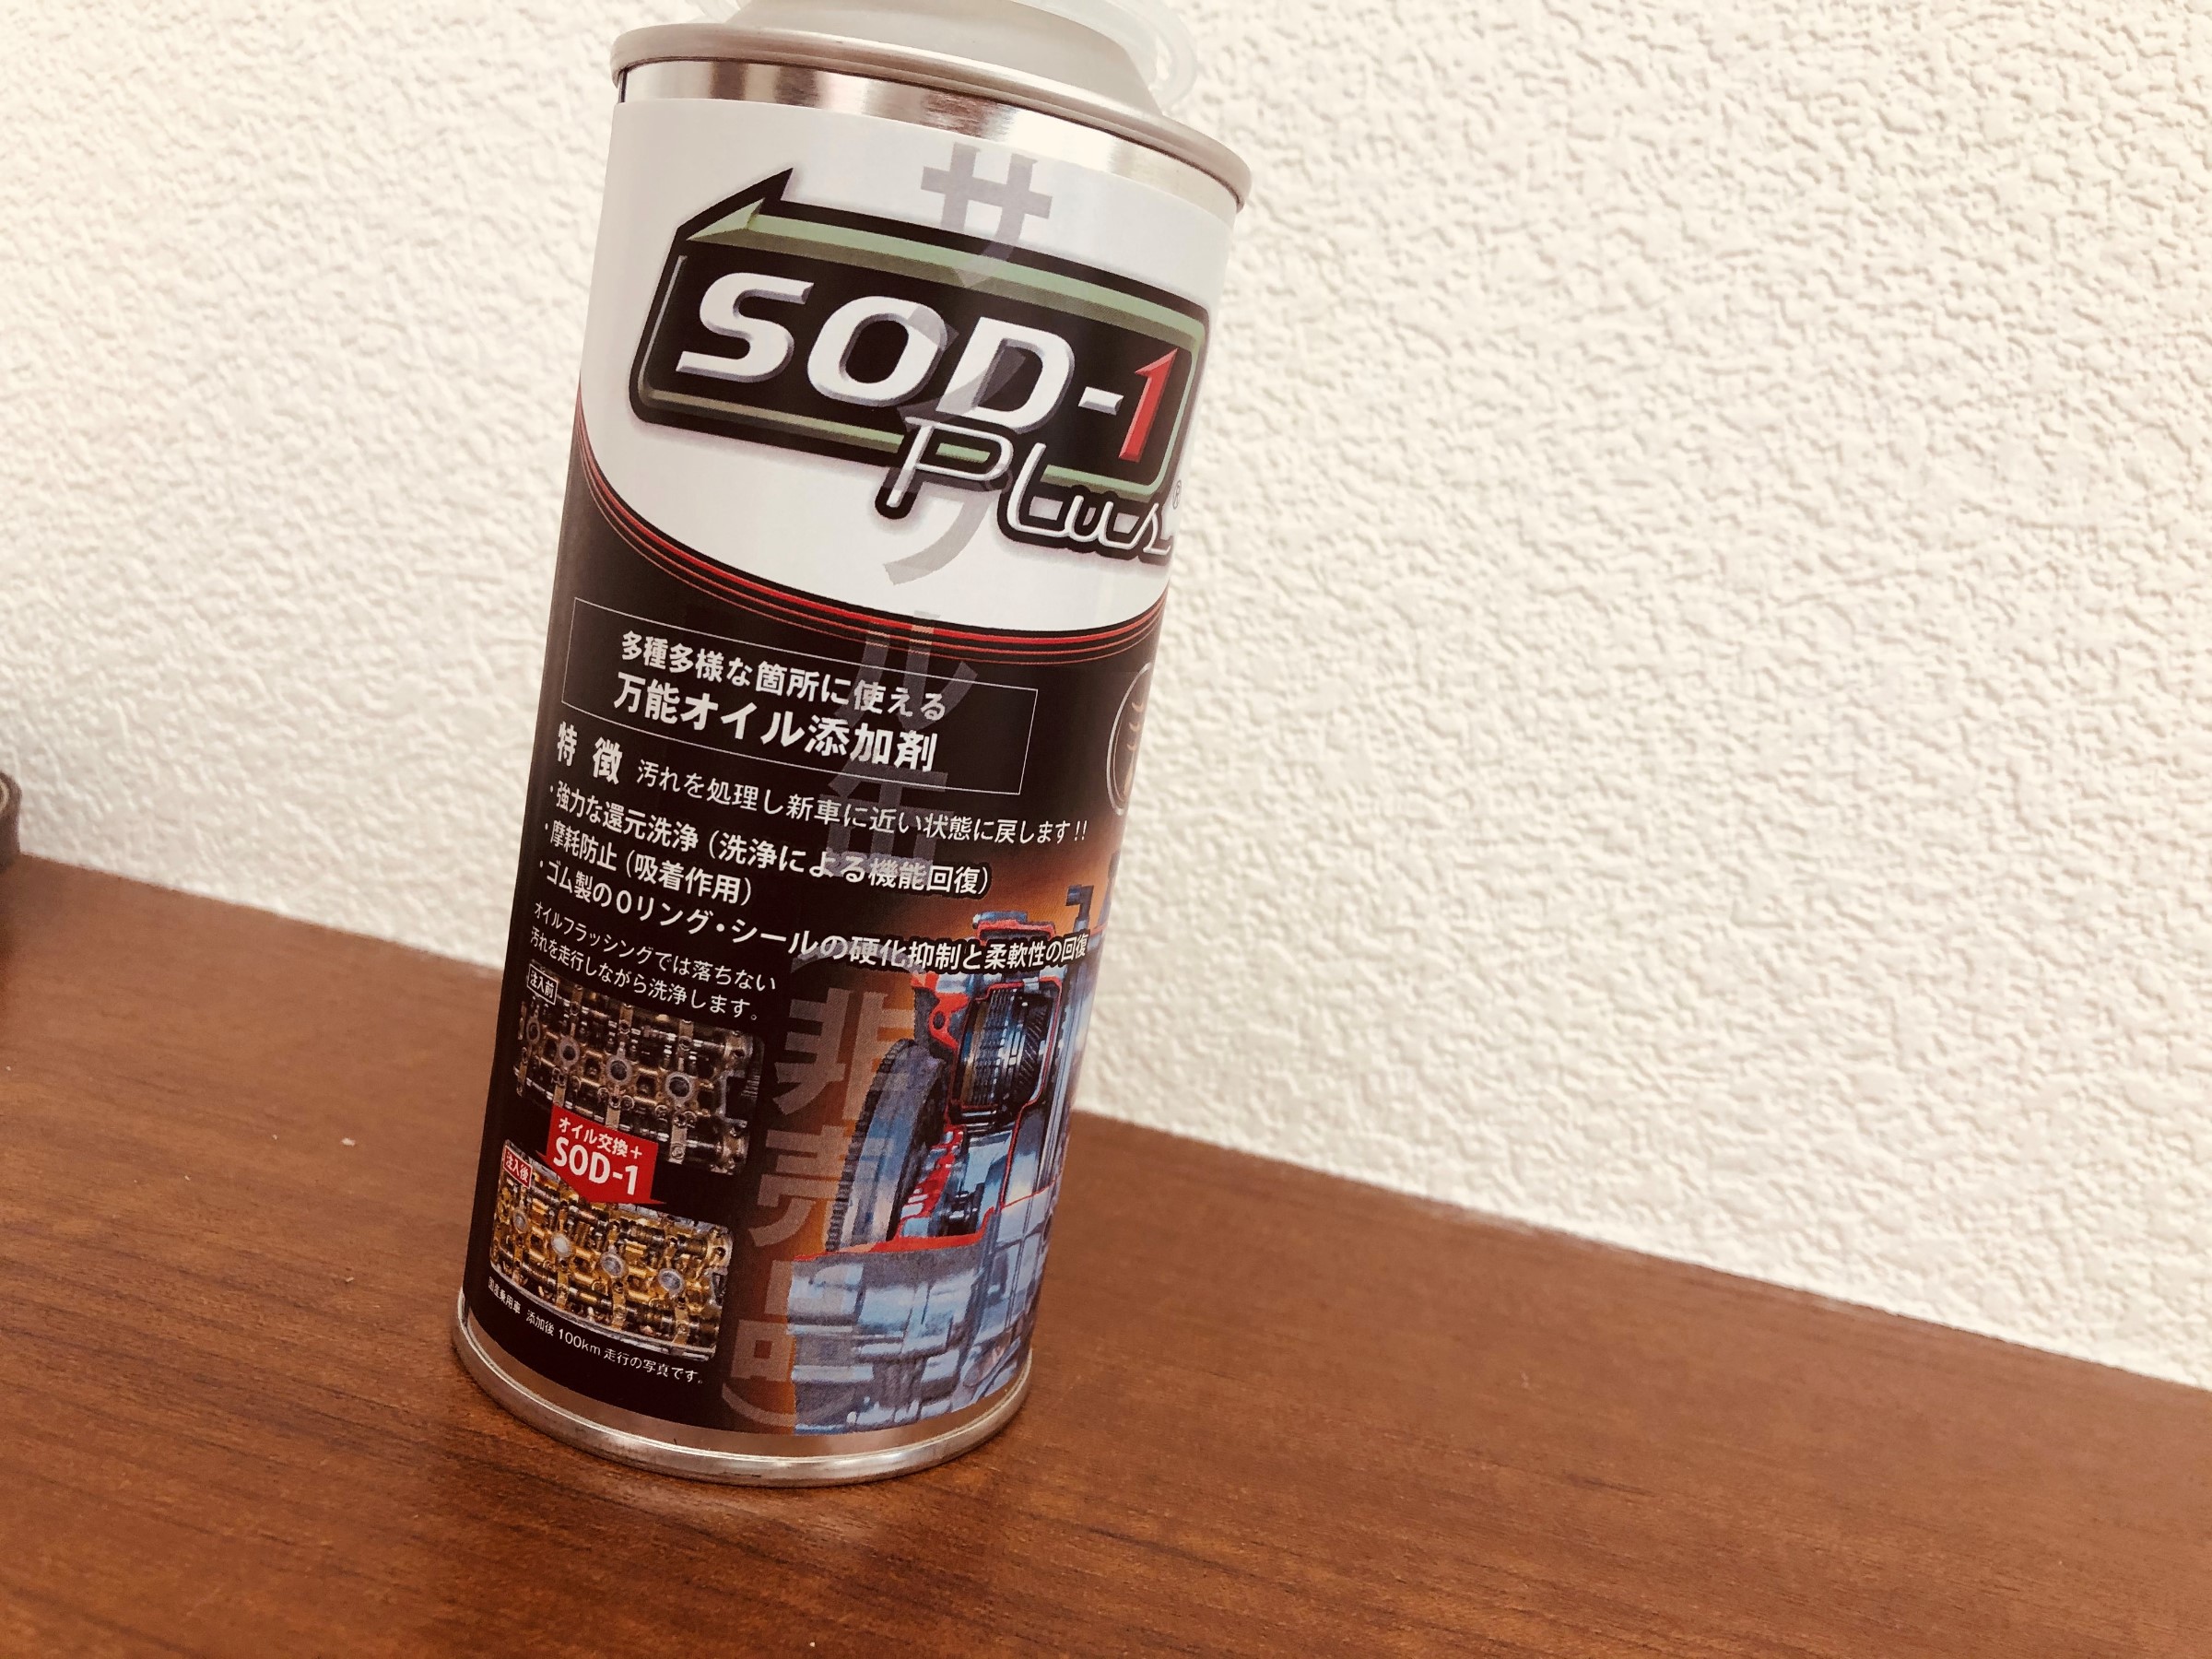 万能オイル添加剤～SOD-1 Plus～ | スタッフ日記 | タイヤ館 札幌ドーム前 | タイヤからはじまる、トータルカーメンテナンス  タイヤ館グループ